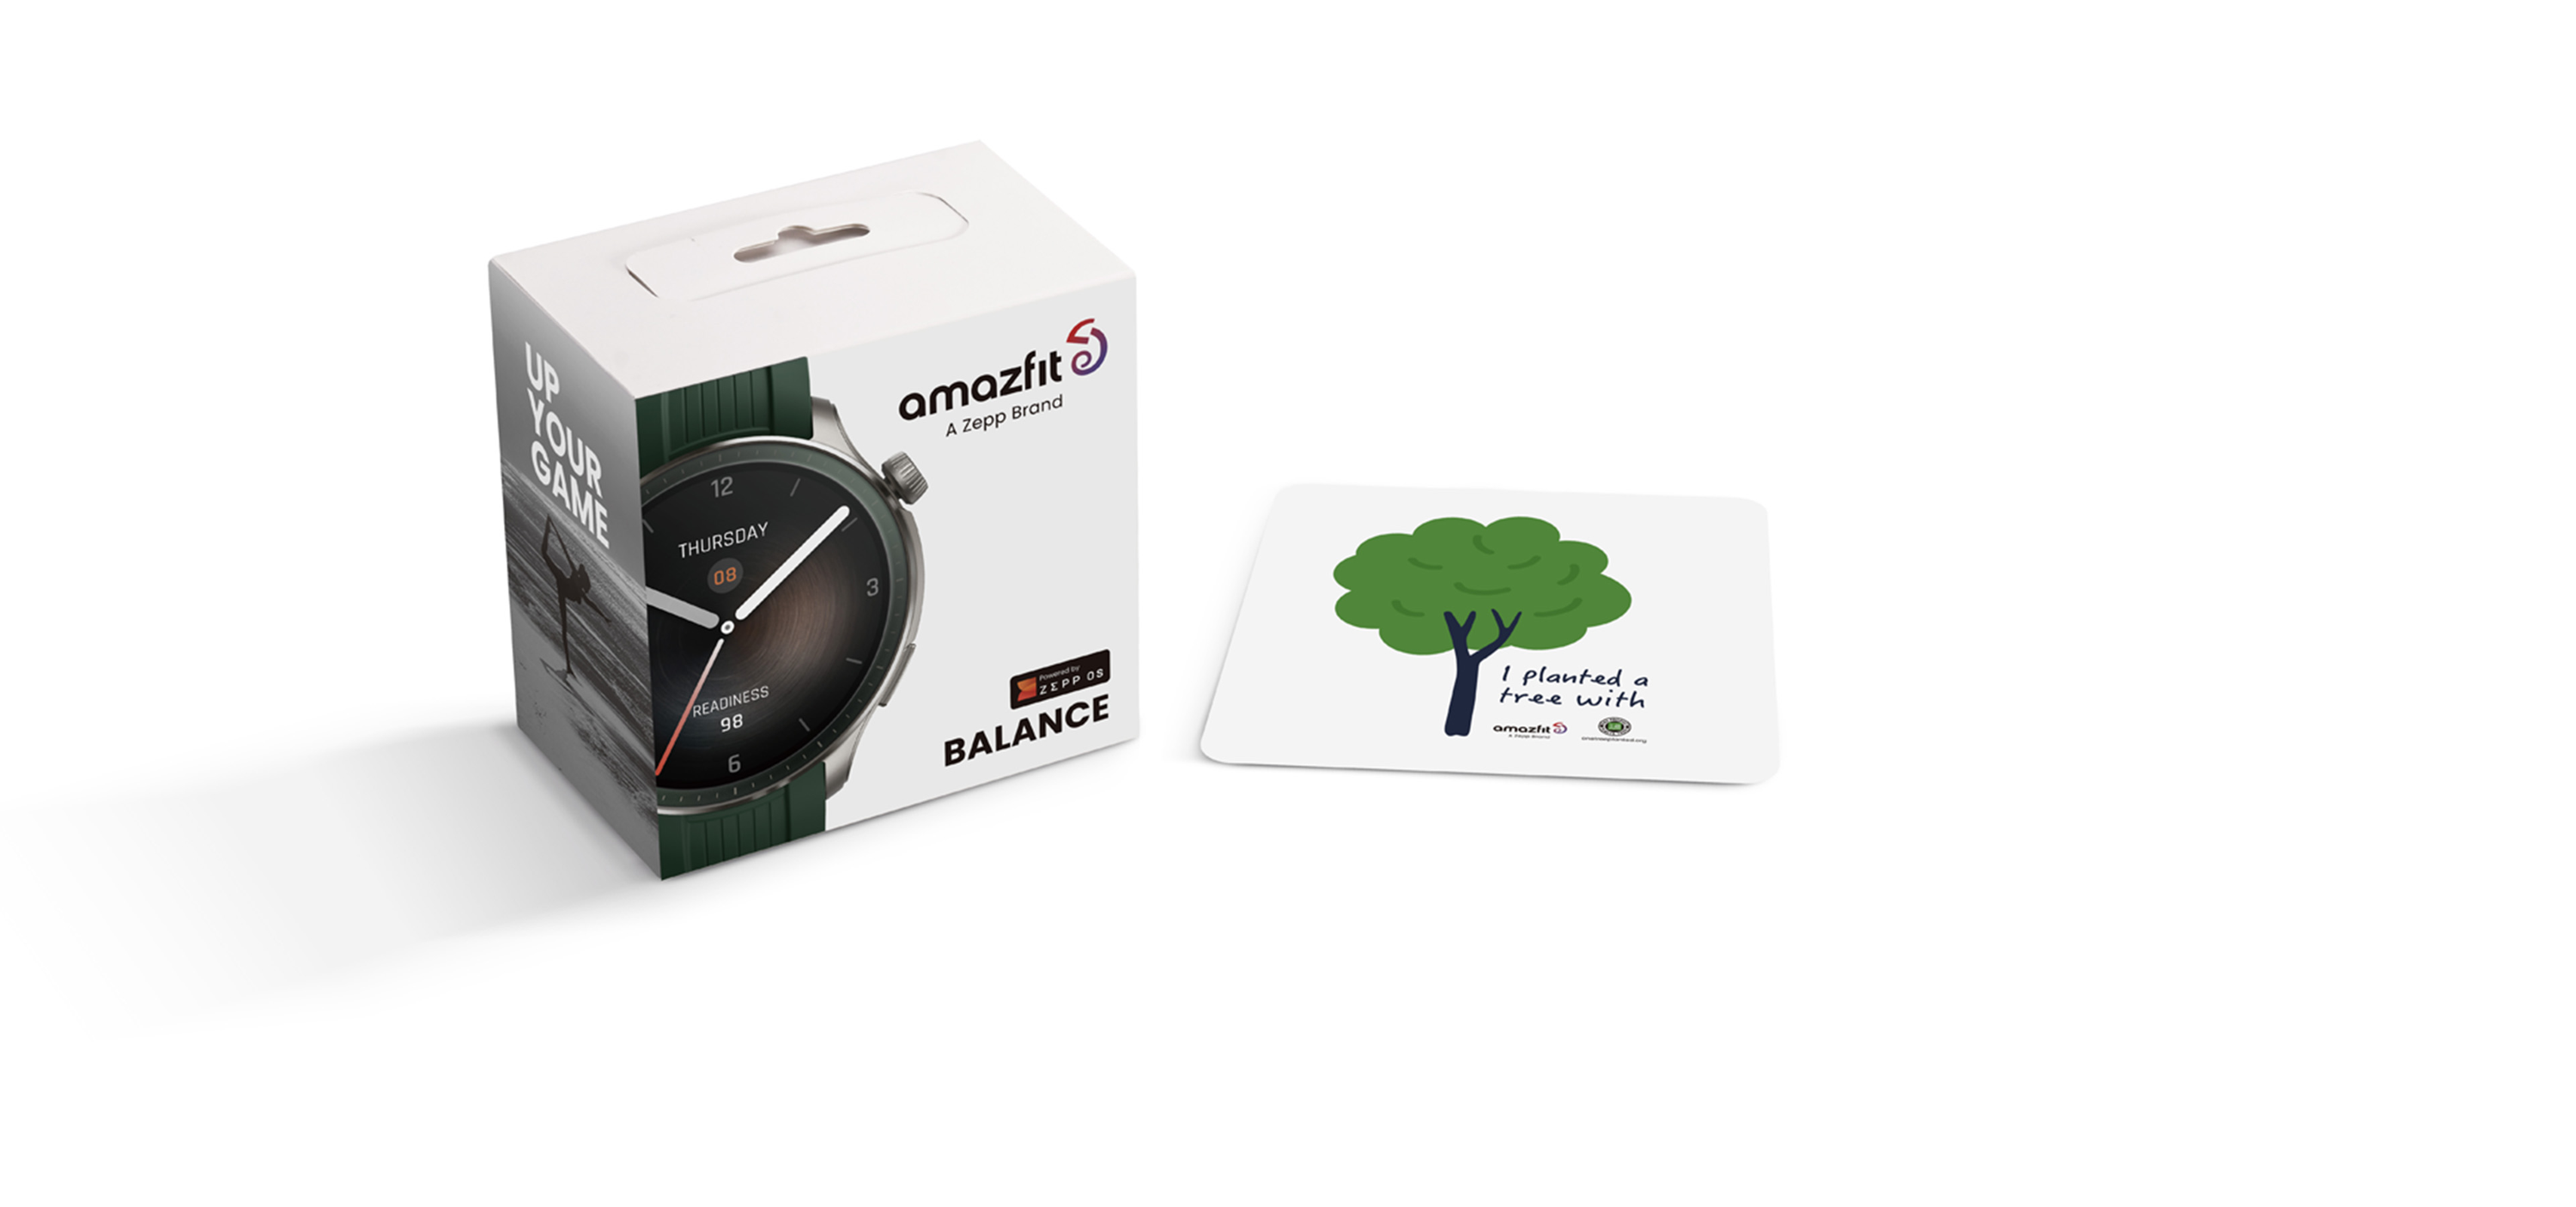 Amazfit Balance Smart Watch